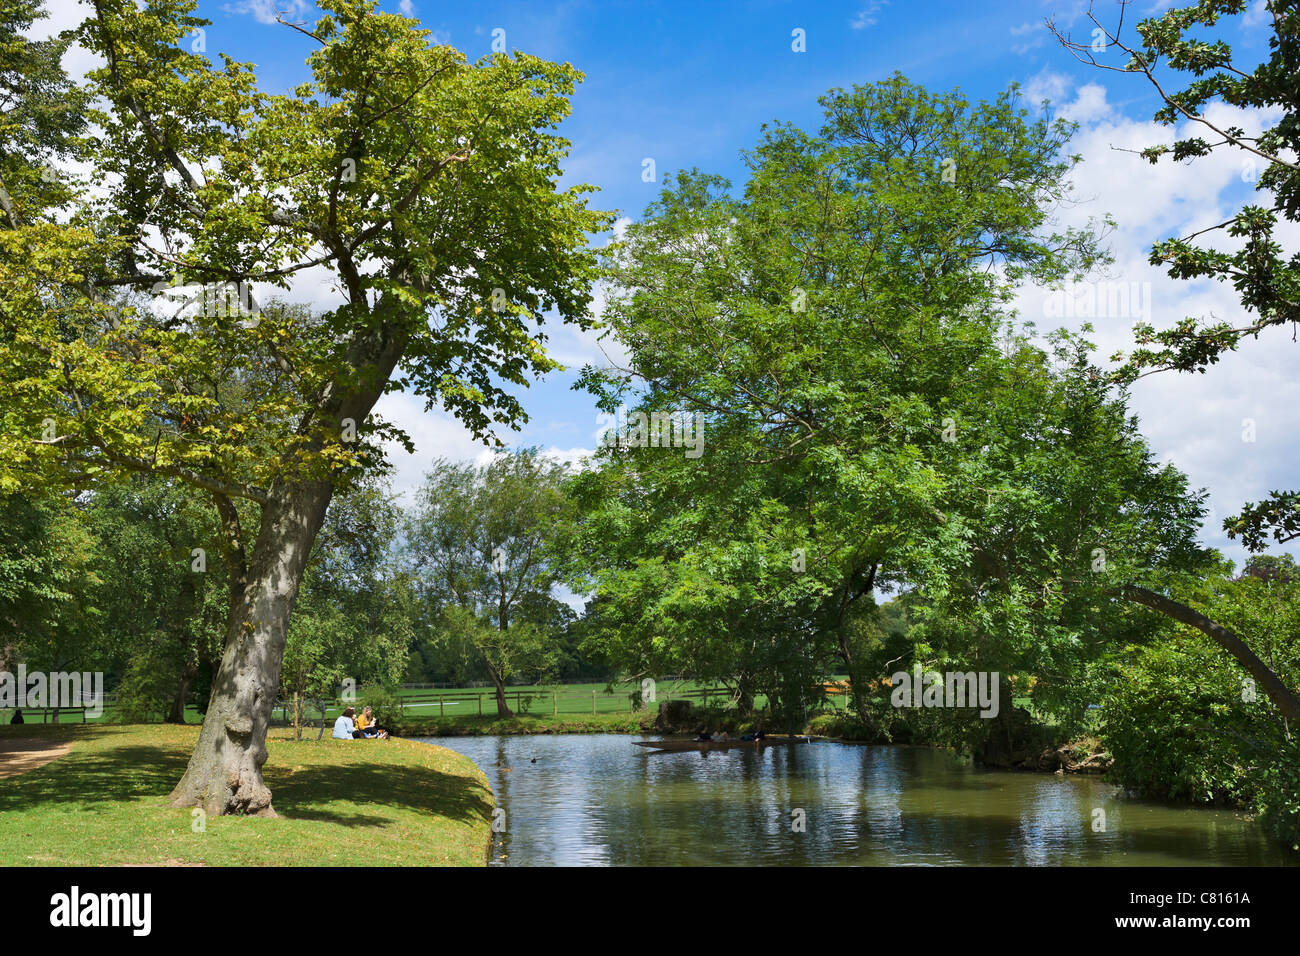 Picknick am Ufer des Flusses Cherwell in der Nähe von Christ Church Meadow, Oxford, Oxfordshire, England, UK Stockfoto